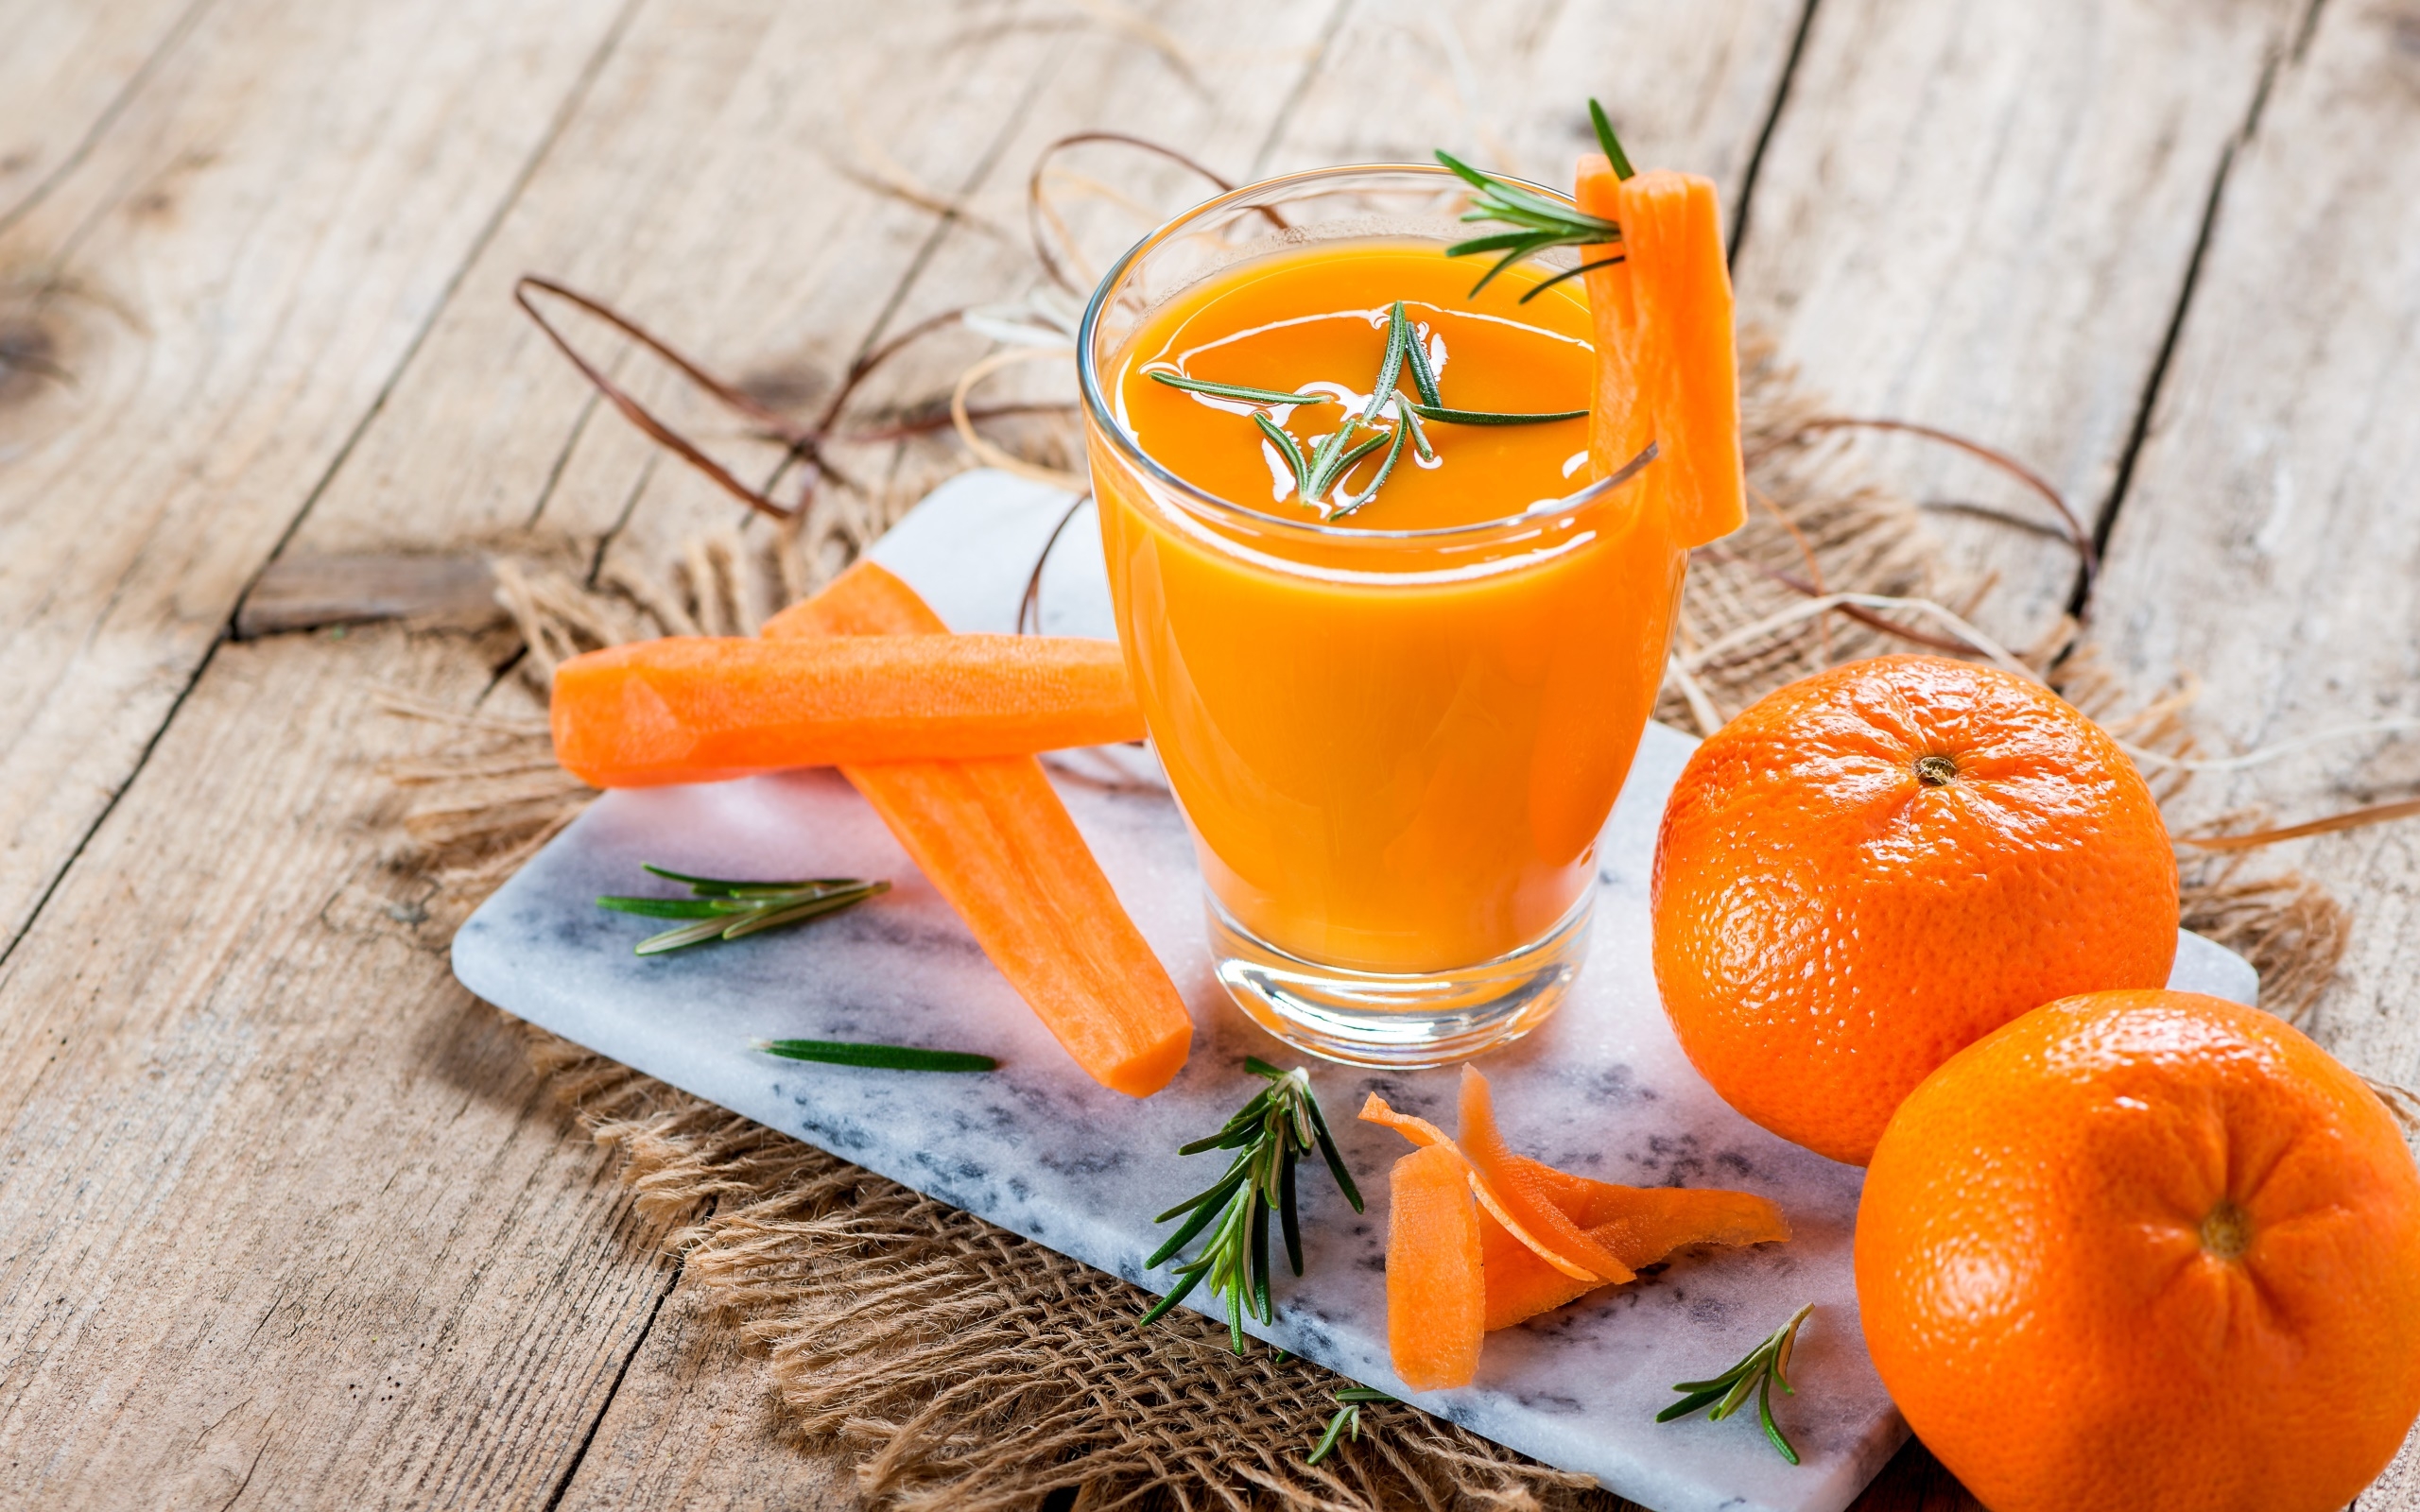 Wallpapers wallpaper orange juice carrots healty drinks on the desktop